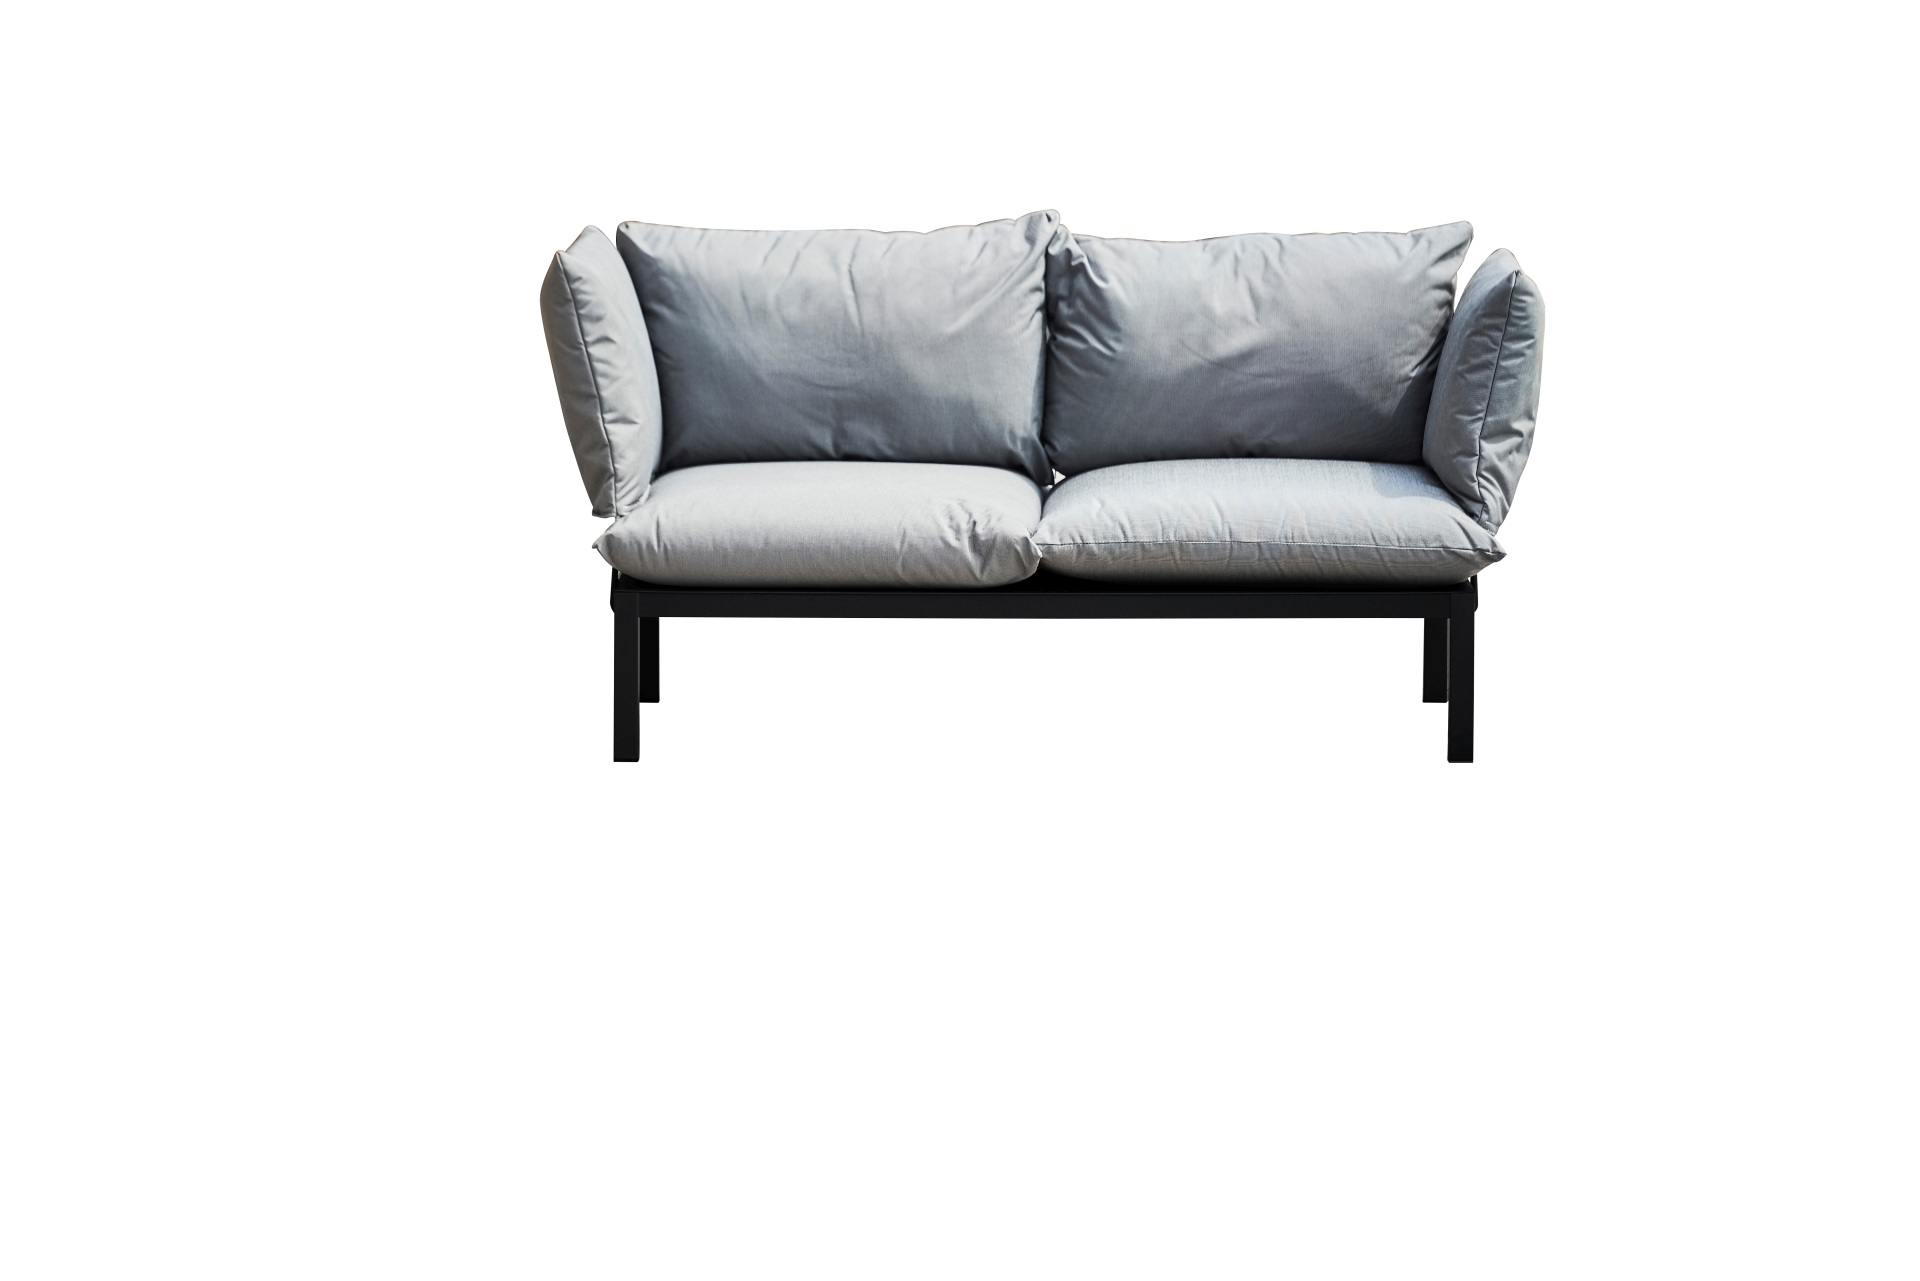 Das Gartensofa Domino in der Ausführung 2-Sitzer hat ein modernes Design. Hergestellt wurde dieses von der Marke Jan Kurtz. Das Sofa ist in verschieden Farbkombinationen erhältlich. Dieses hat die Gestell-Farbe Schwarz und die Bezug-Farbe Grau.